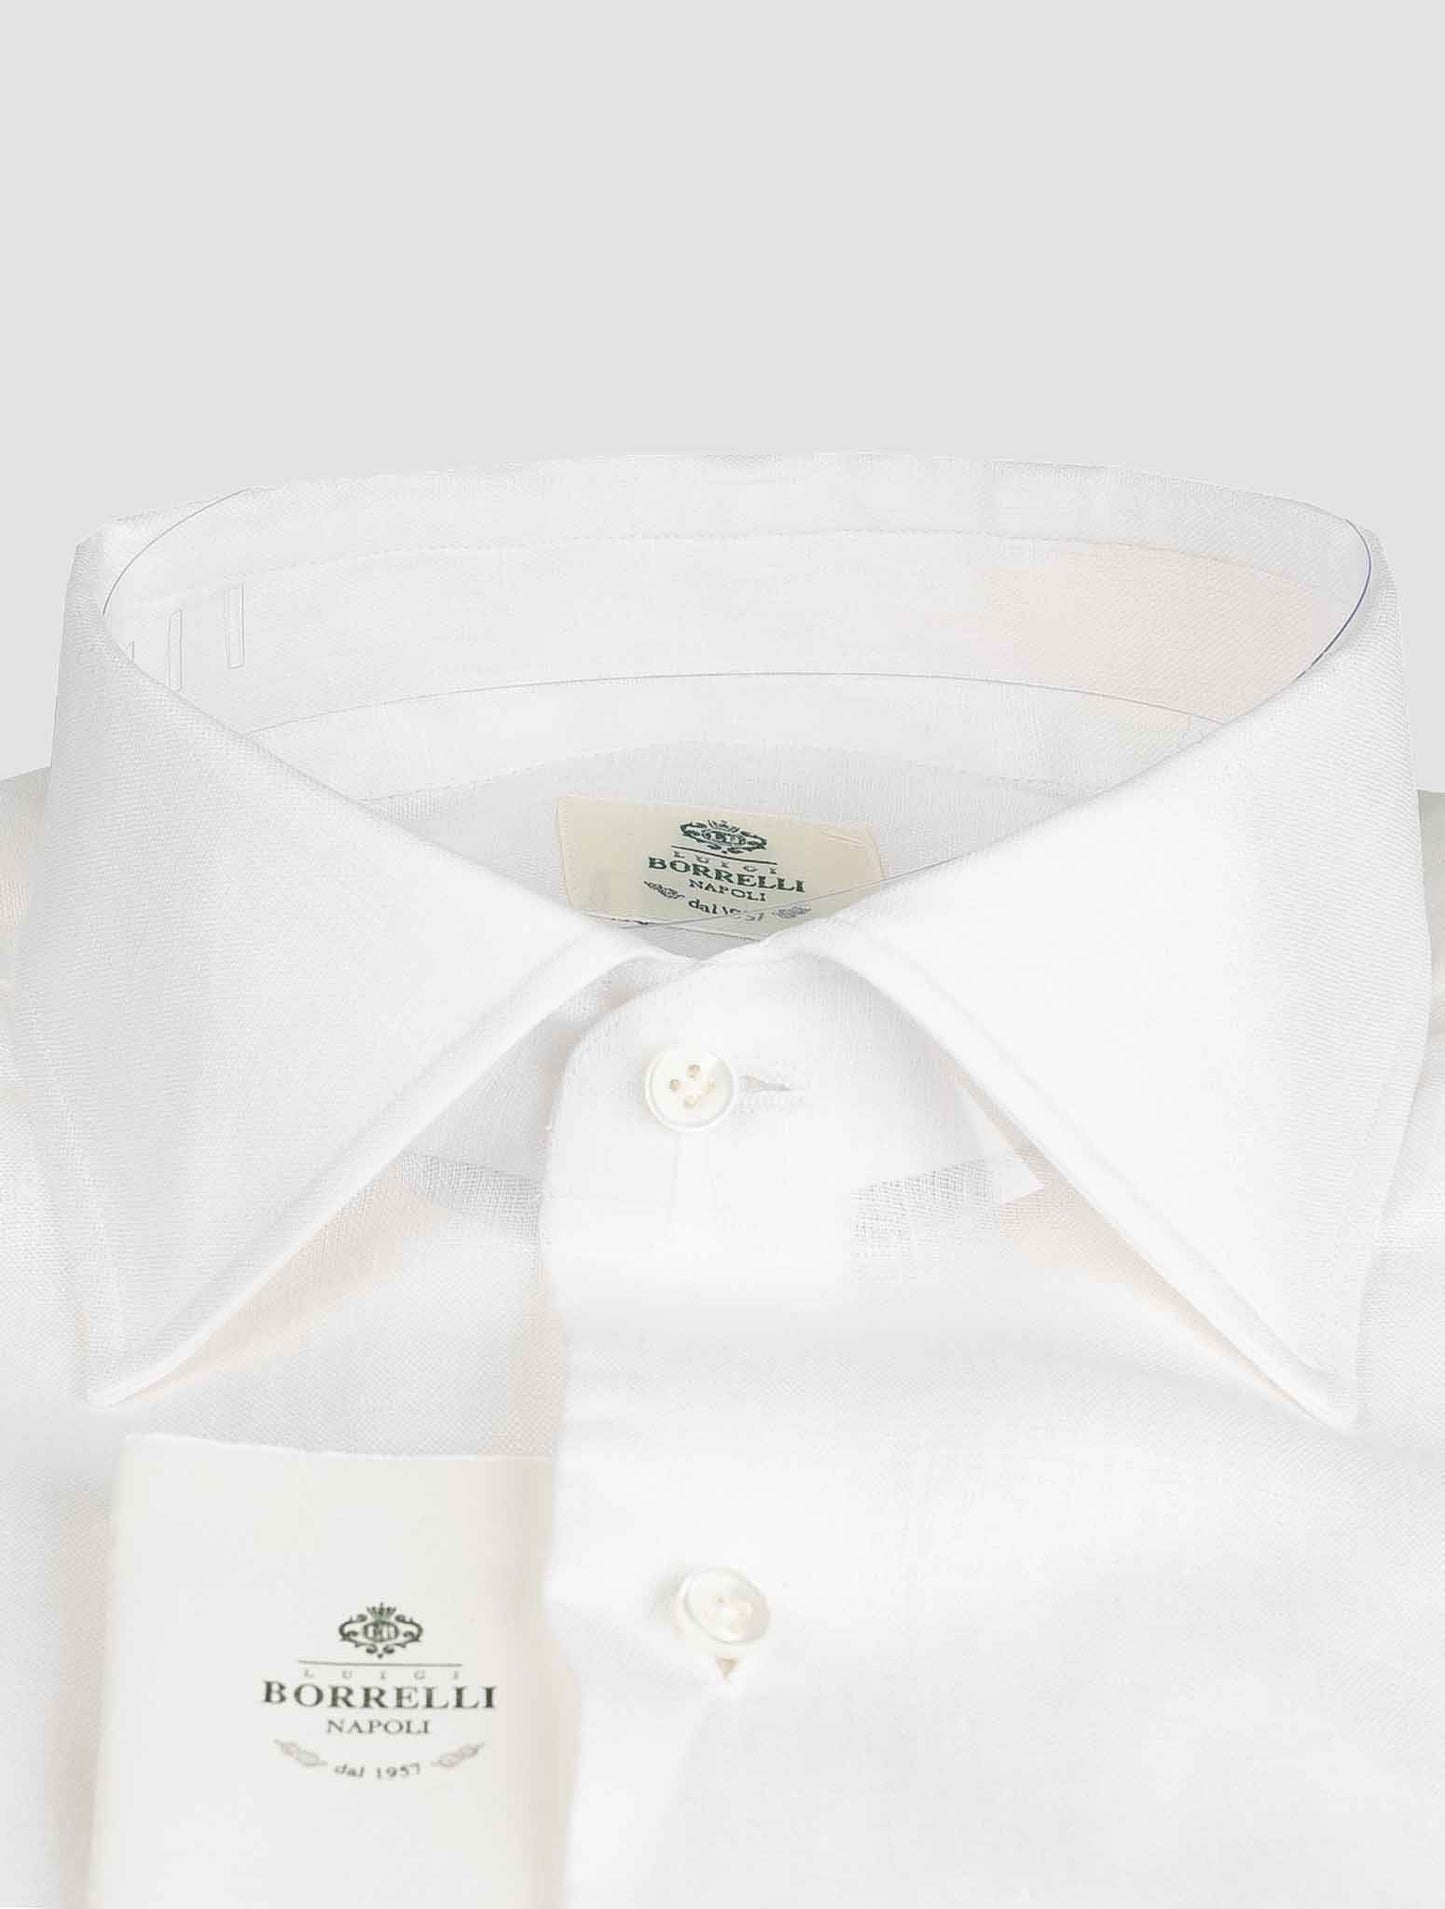 Luigi Borrelliホワイトコットンシャツ